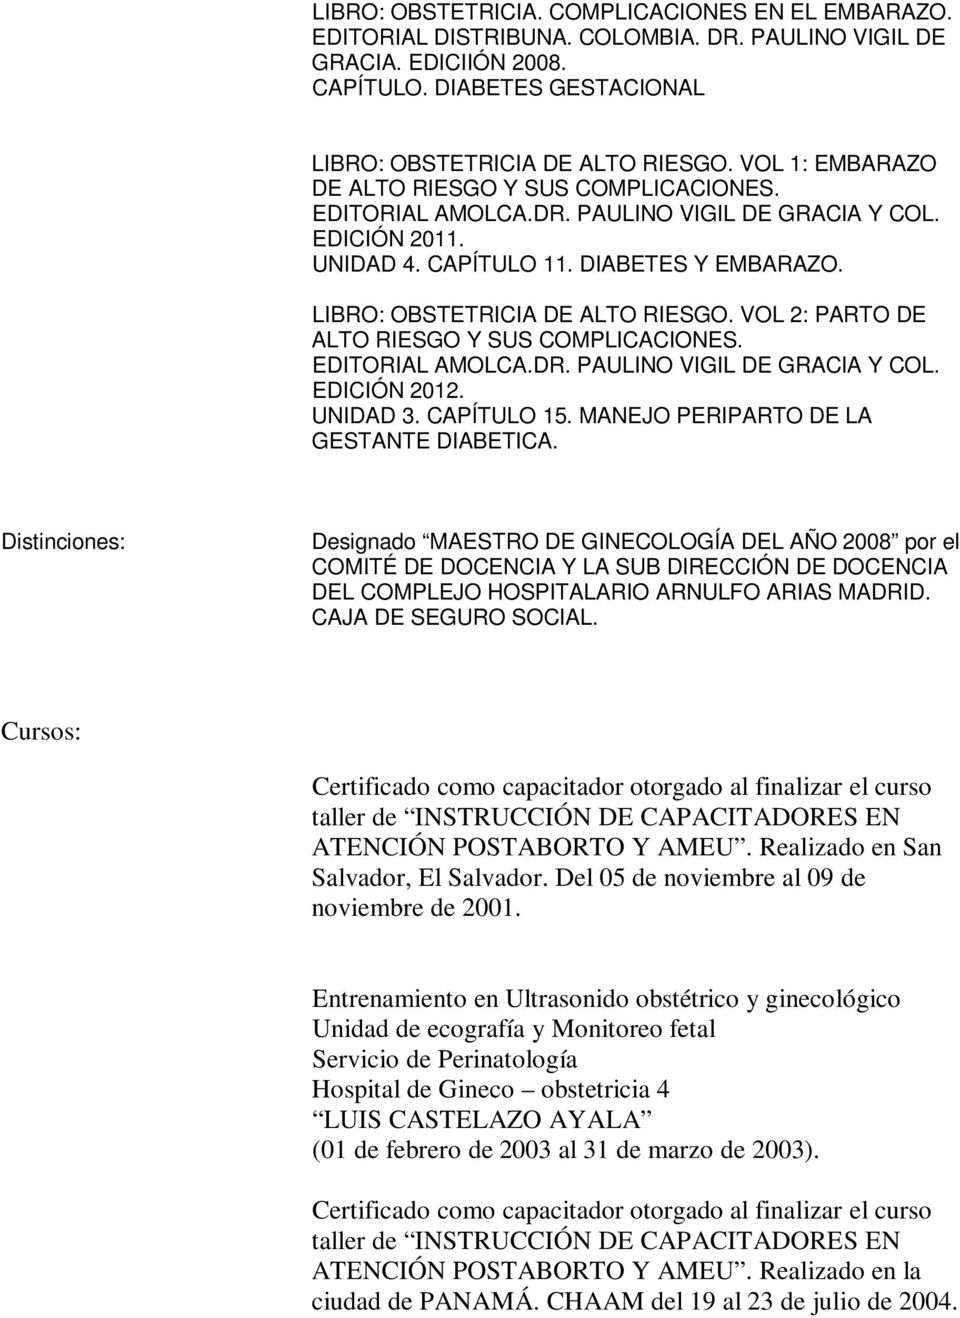 VOL 2: PARTO DE ALTO RIESGO Y SUS COMPLICACIONES. EDITORIAL AMOLCA.DR. PAULINO VIGIL DE GRACIA Y COL. EDICIÓN 2012. UNIDAD 3. CAPÍTULO 15. MANEJO PERIPARTO DE LA GESTANTE DIABETICA.